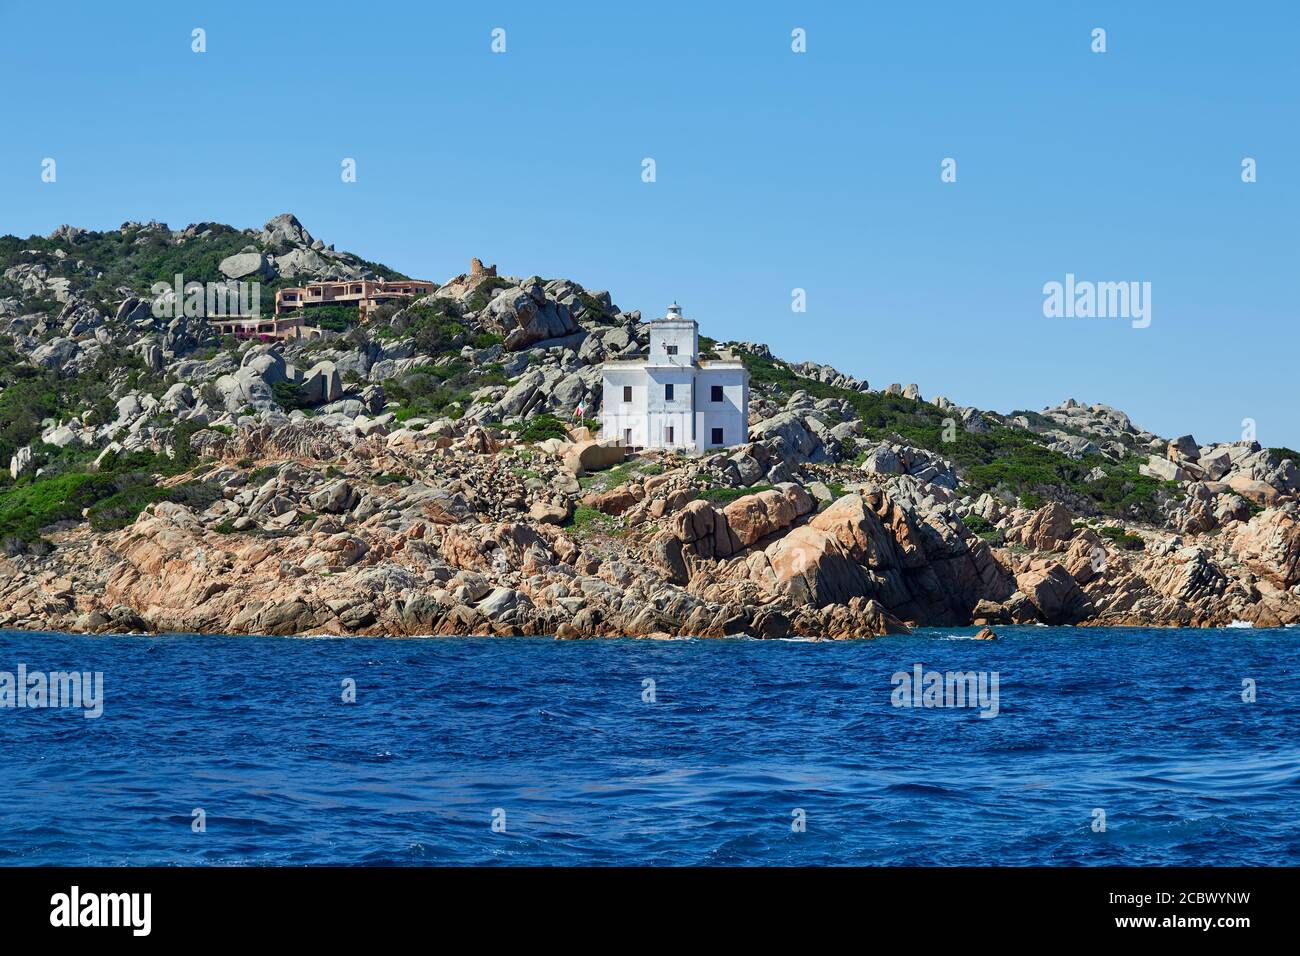 Audaci colori acquei della costa turrenica, vista dal viaggio in traghetto a la Maddalena, Sardegna Foto Stock